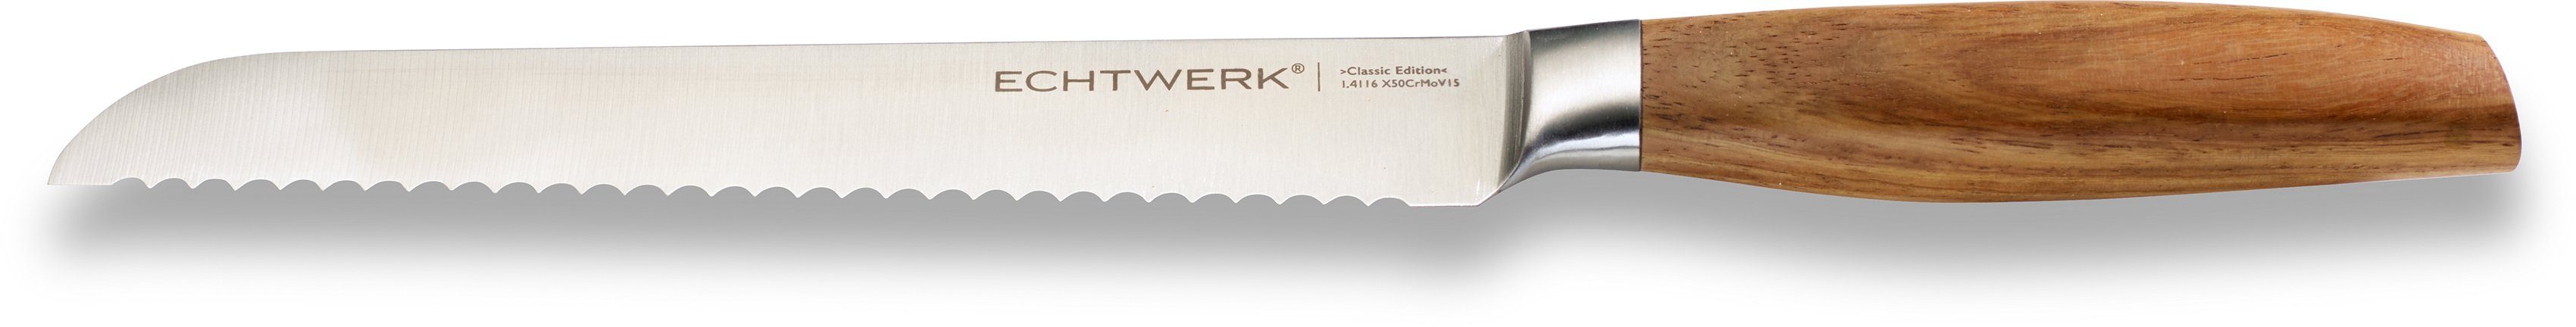 ECHTWERK Brotmesser Classic Edition, Küchenmesser, Edelstahl, Klingenlänge 20 cm, Griff aus Akazienholz